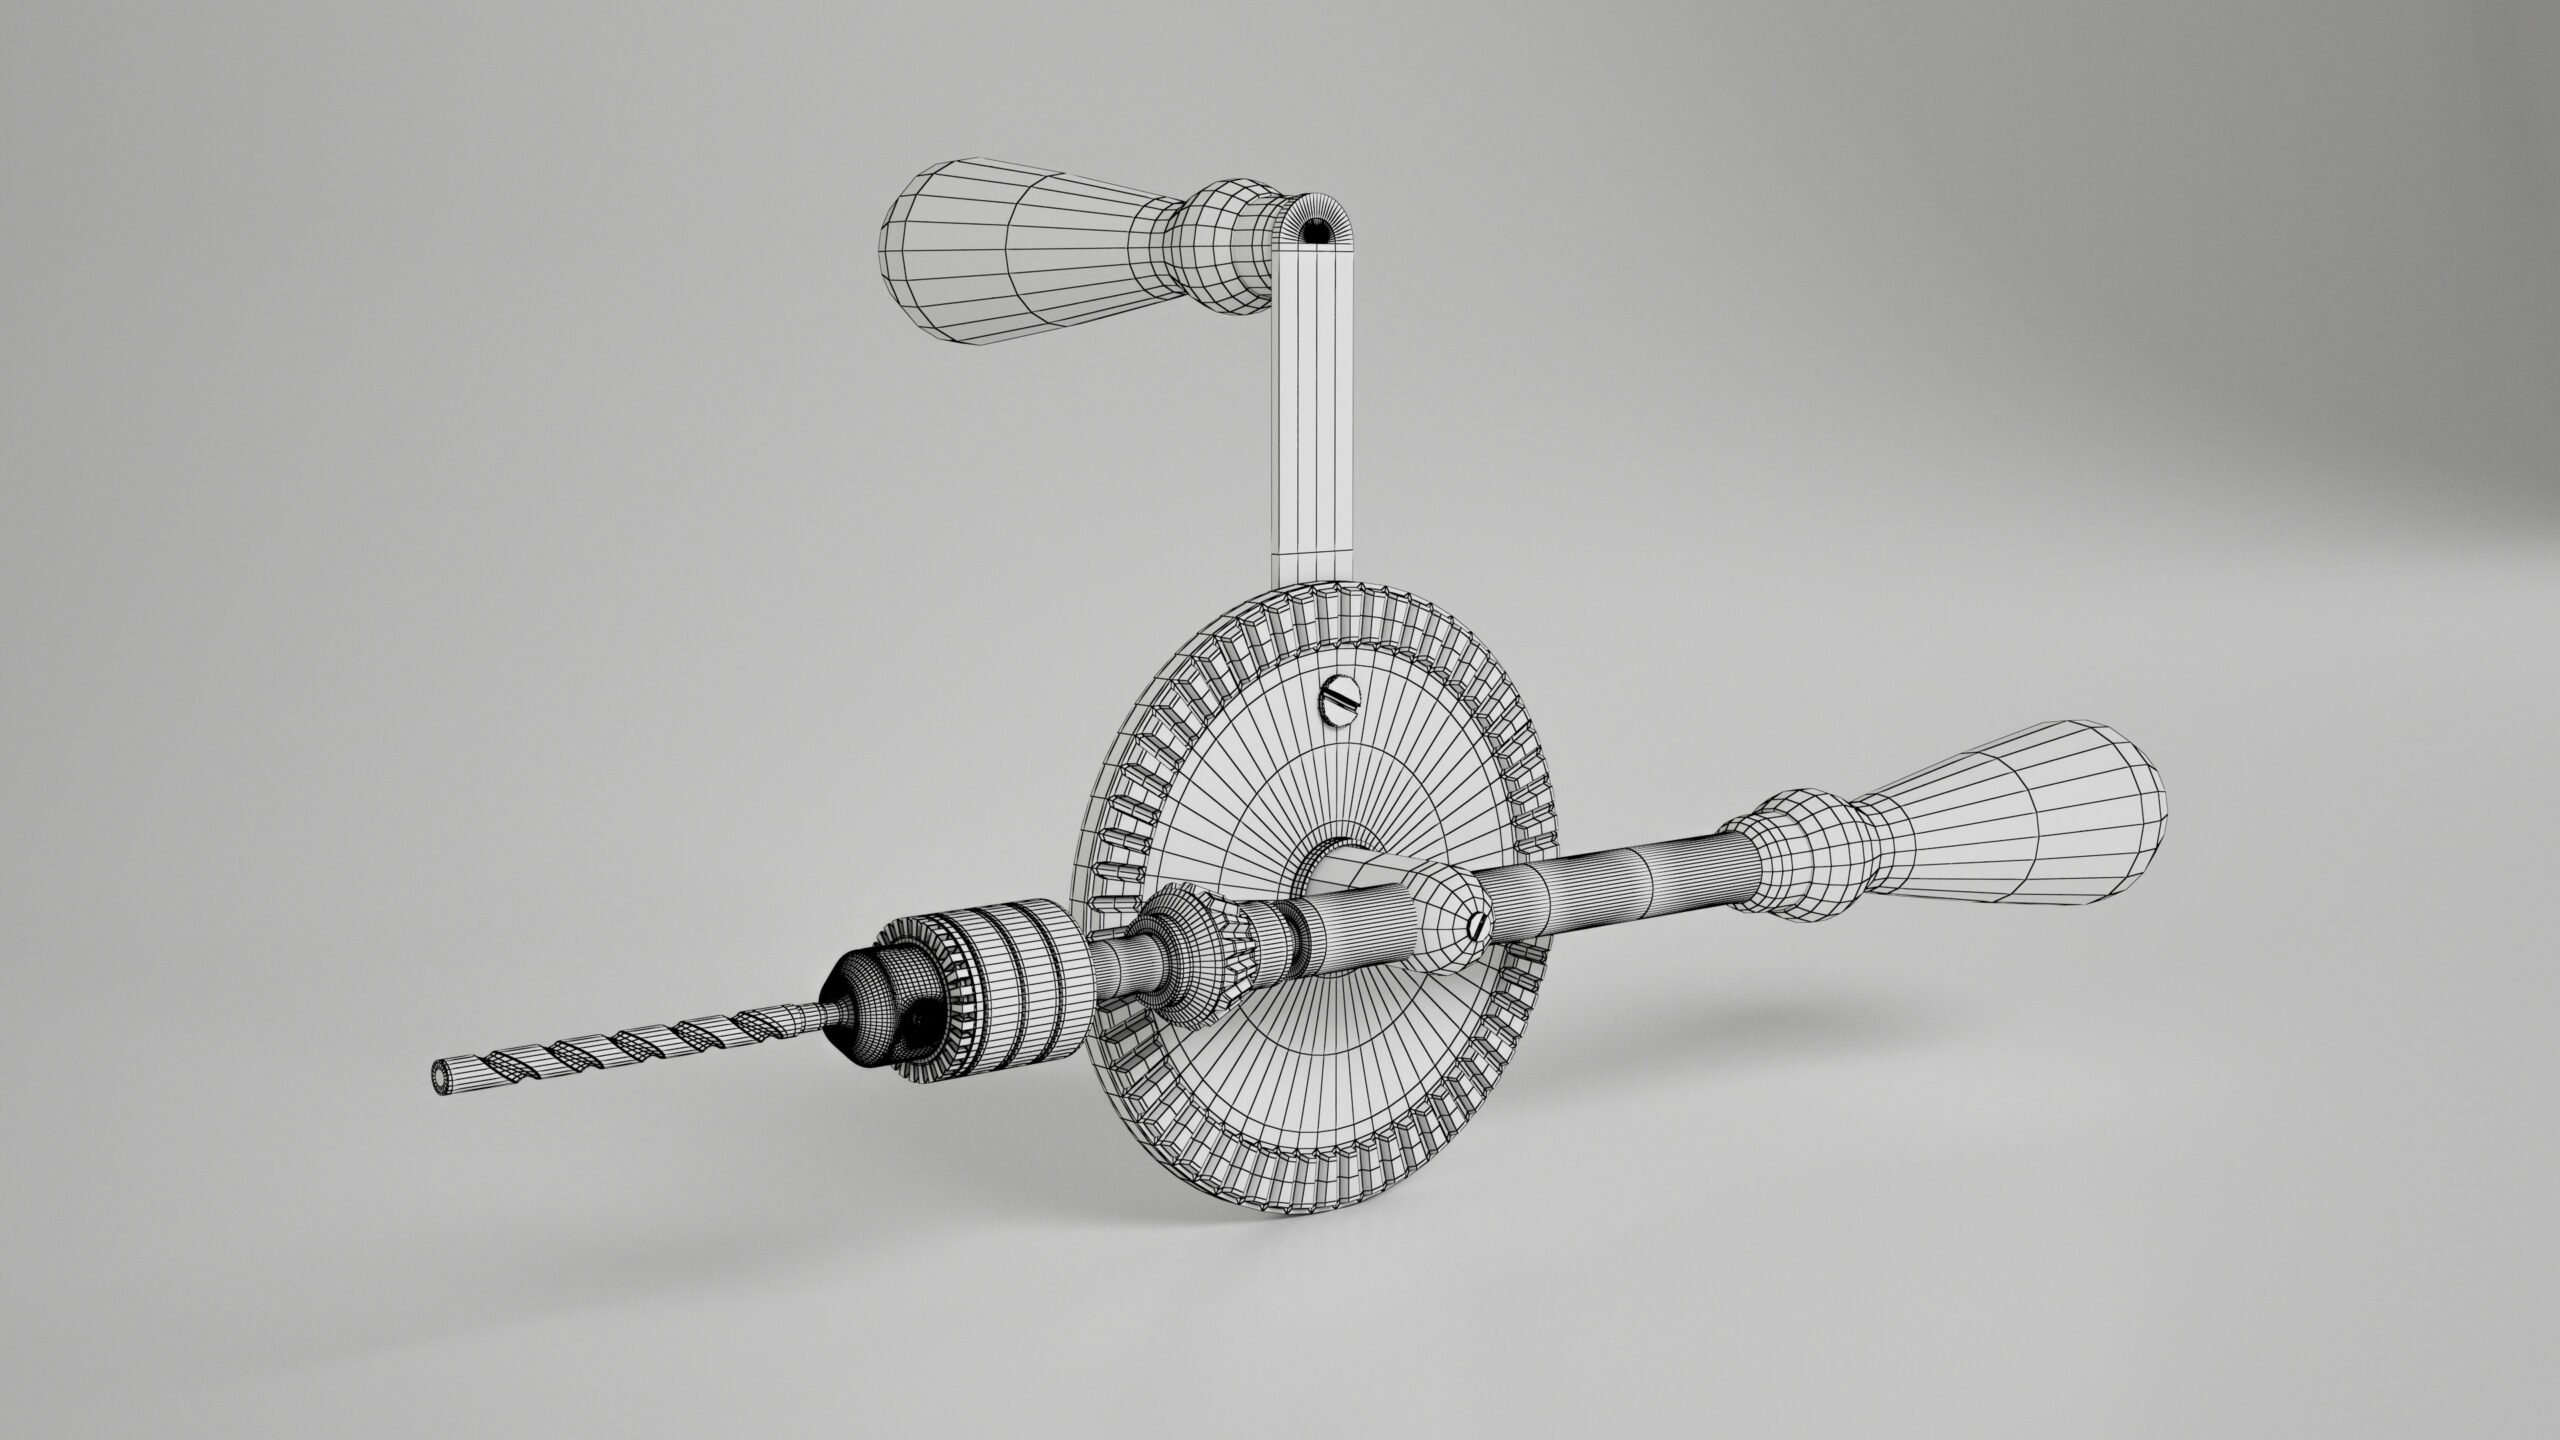 Hand drill manual traditional tool 3d models 3D model